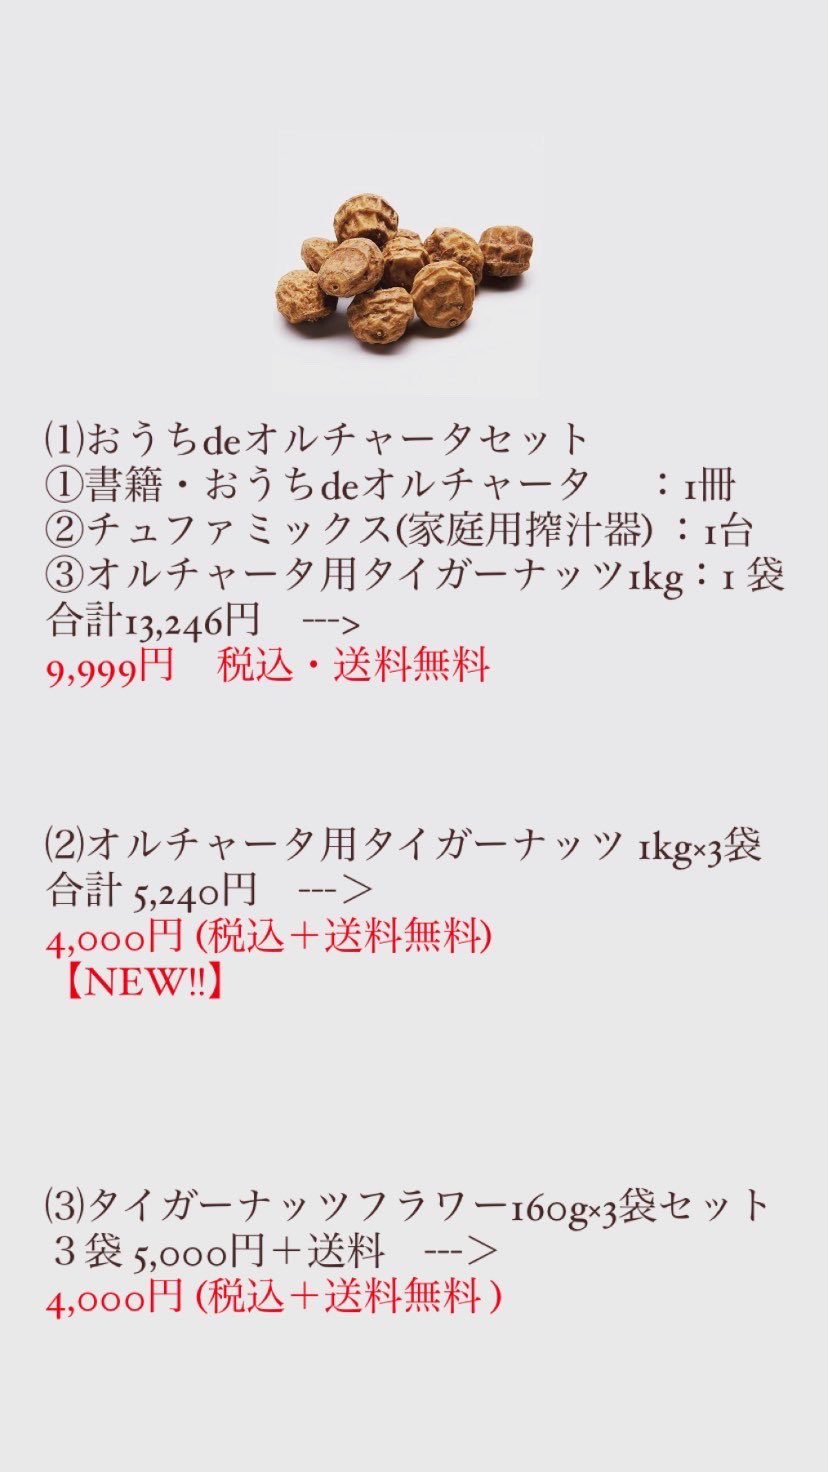 公式 Tigernuts Japan タイガーナッツ ジャパン株式会社 Tigerkeiko Twitter